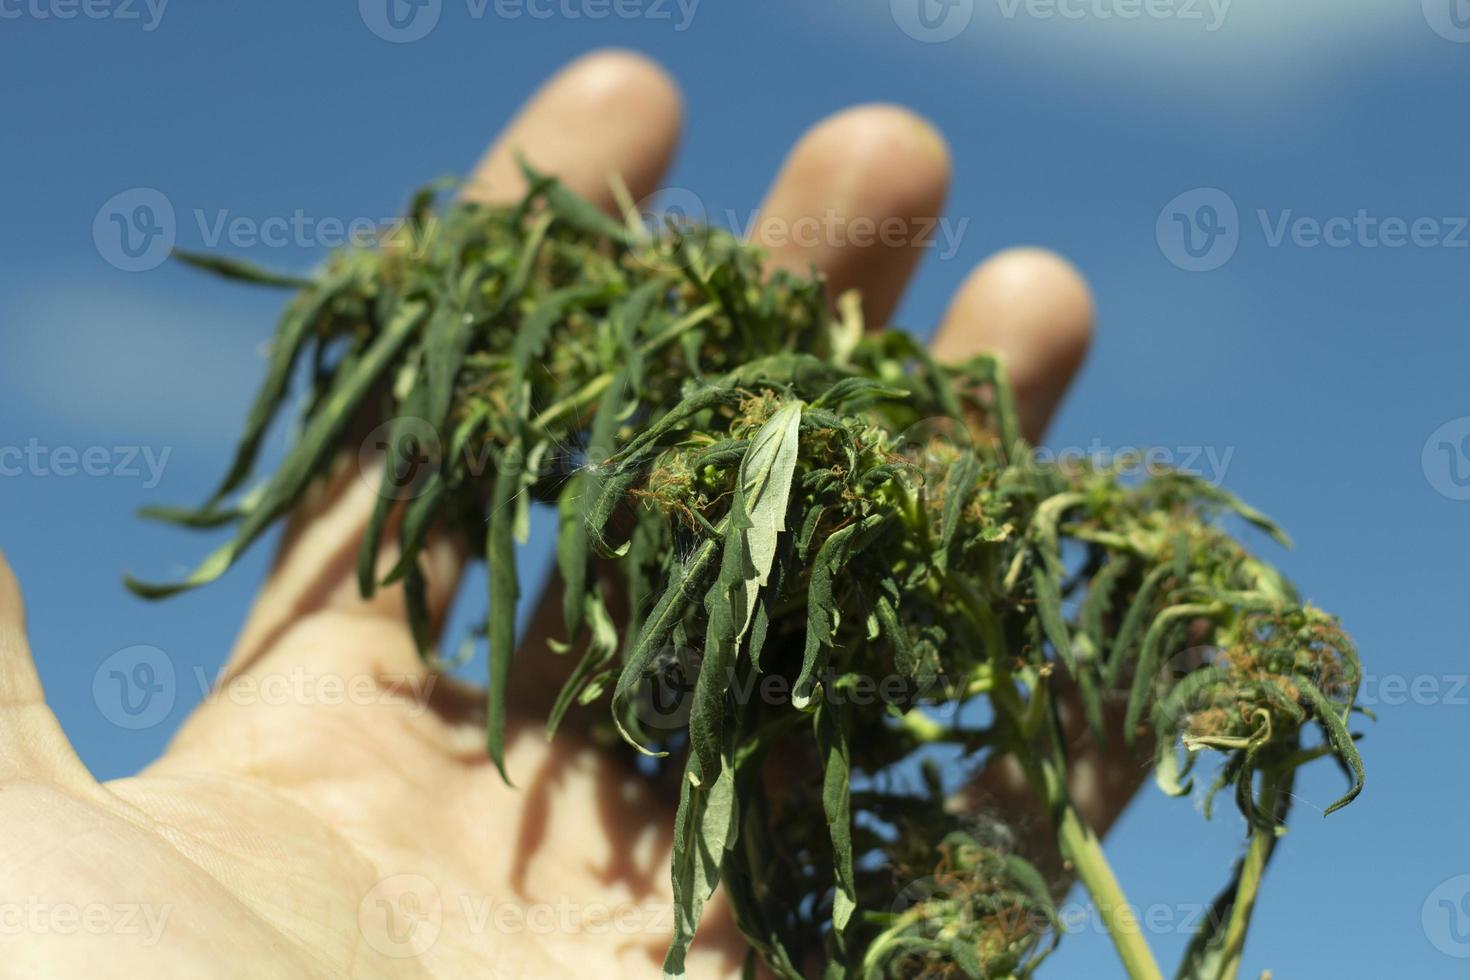 marijuanaplantan är på sommaren. handen håller cannabis. vild marijuanaväxt. foto